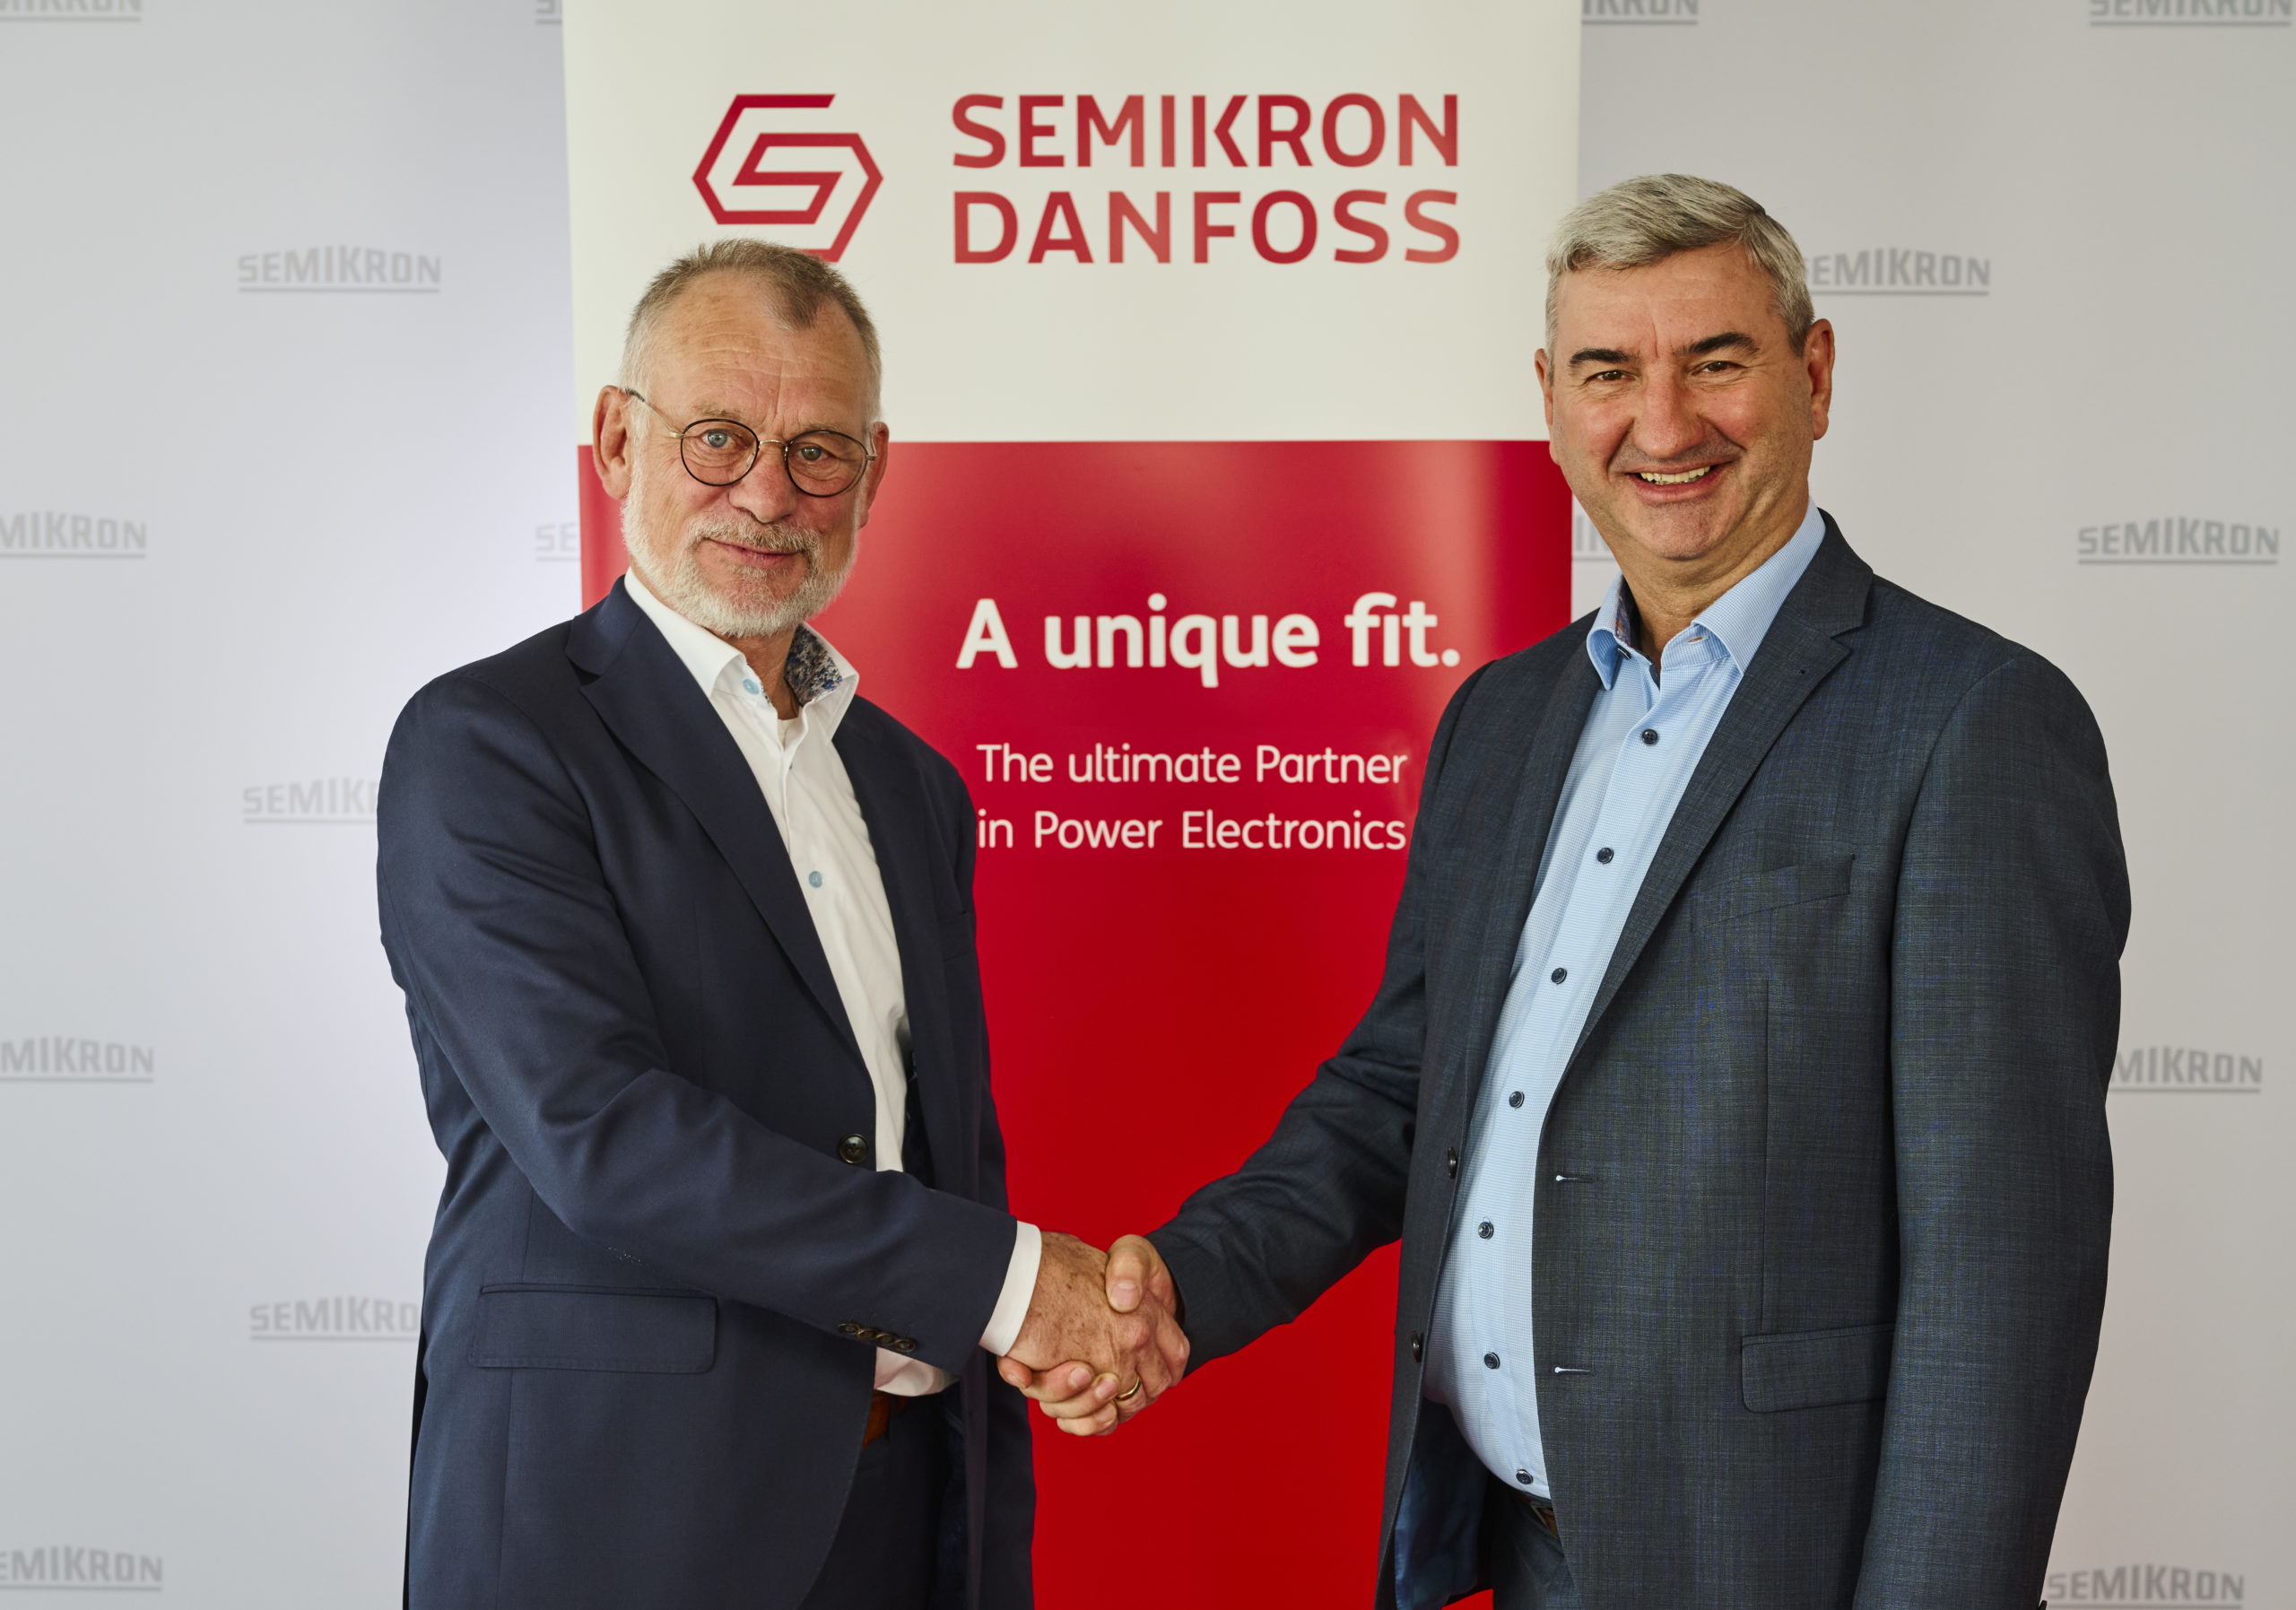 SEMIKRON ve Danfoss Silicon Power, Semikron Danfoss adı altında birleşti